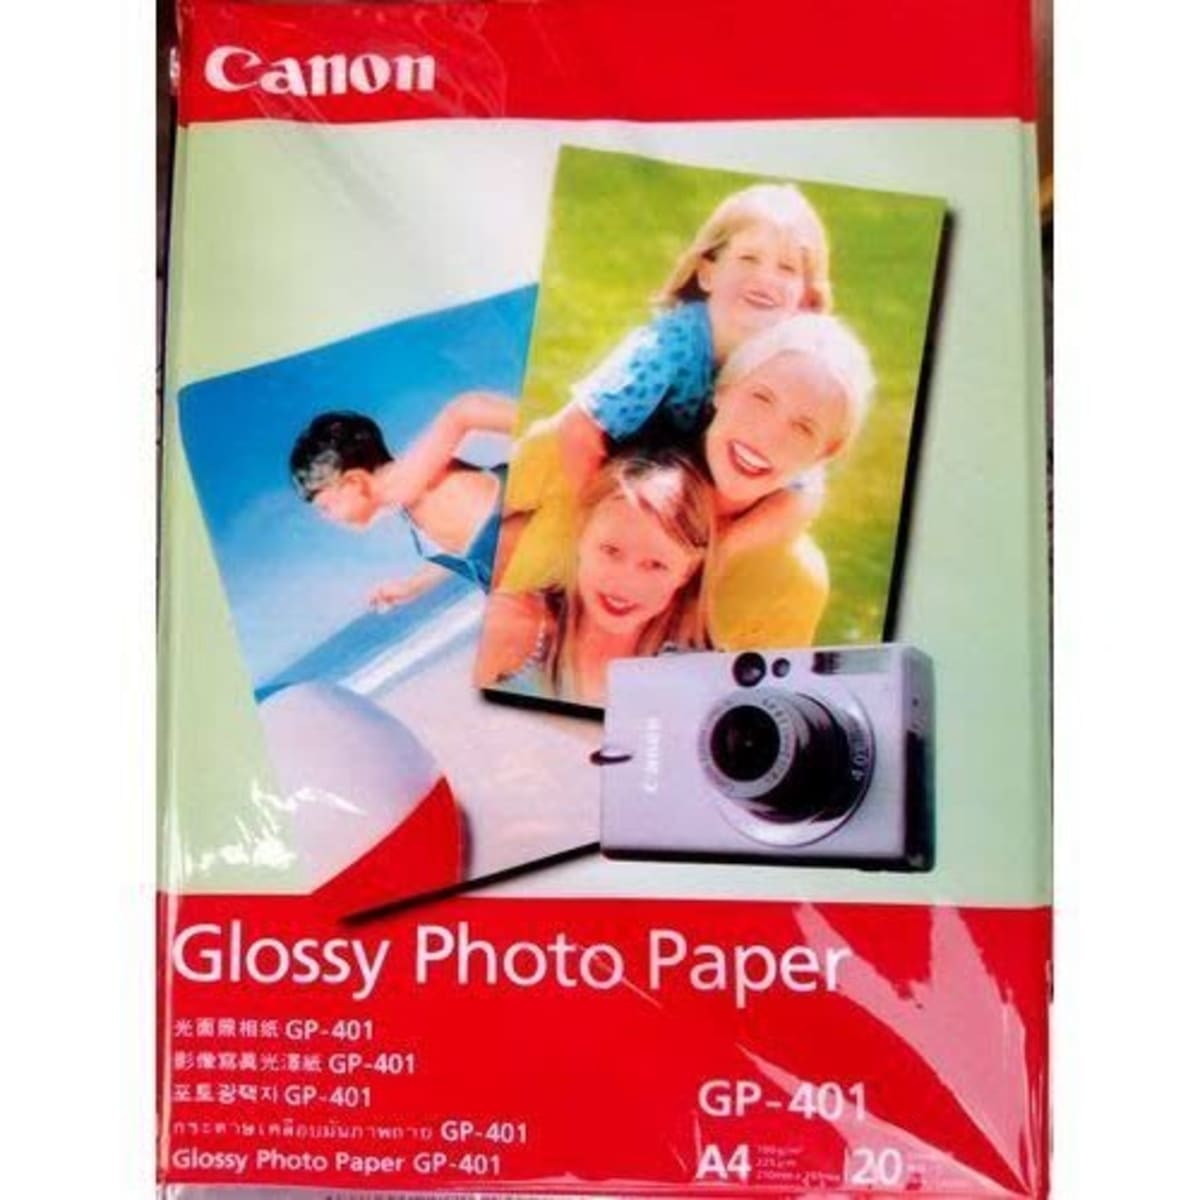 Canon Printer + Glossy Photo Paper